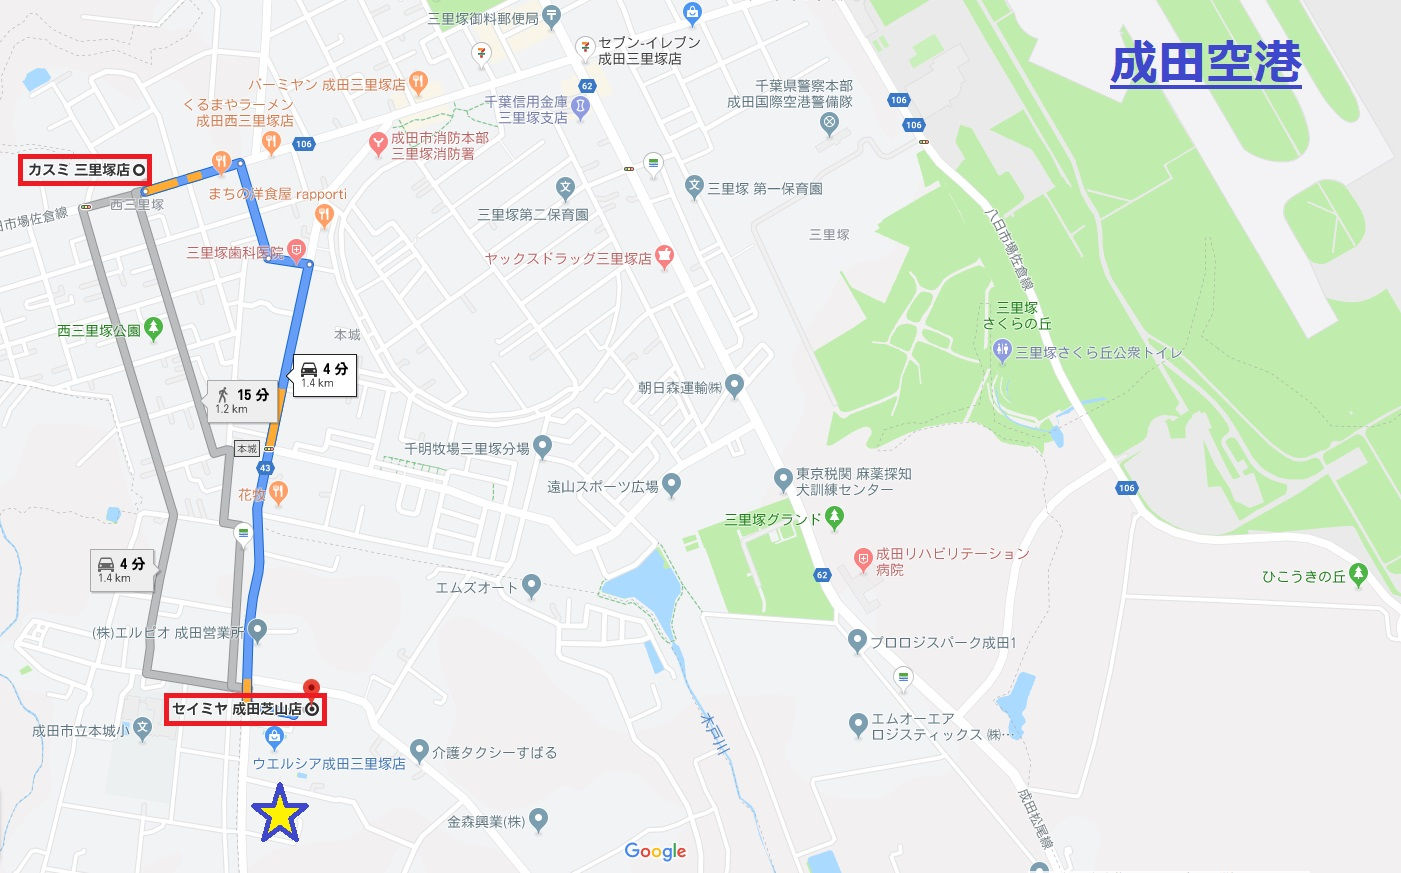 成田三里塚地域のスーパーの位置関係